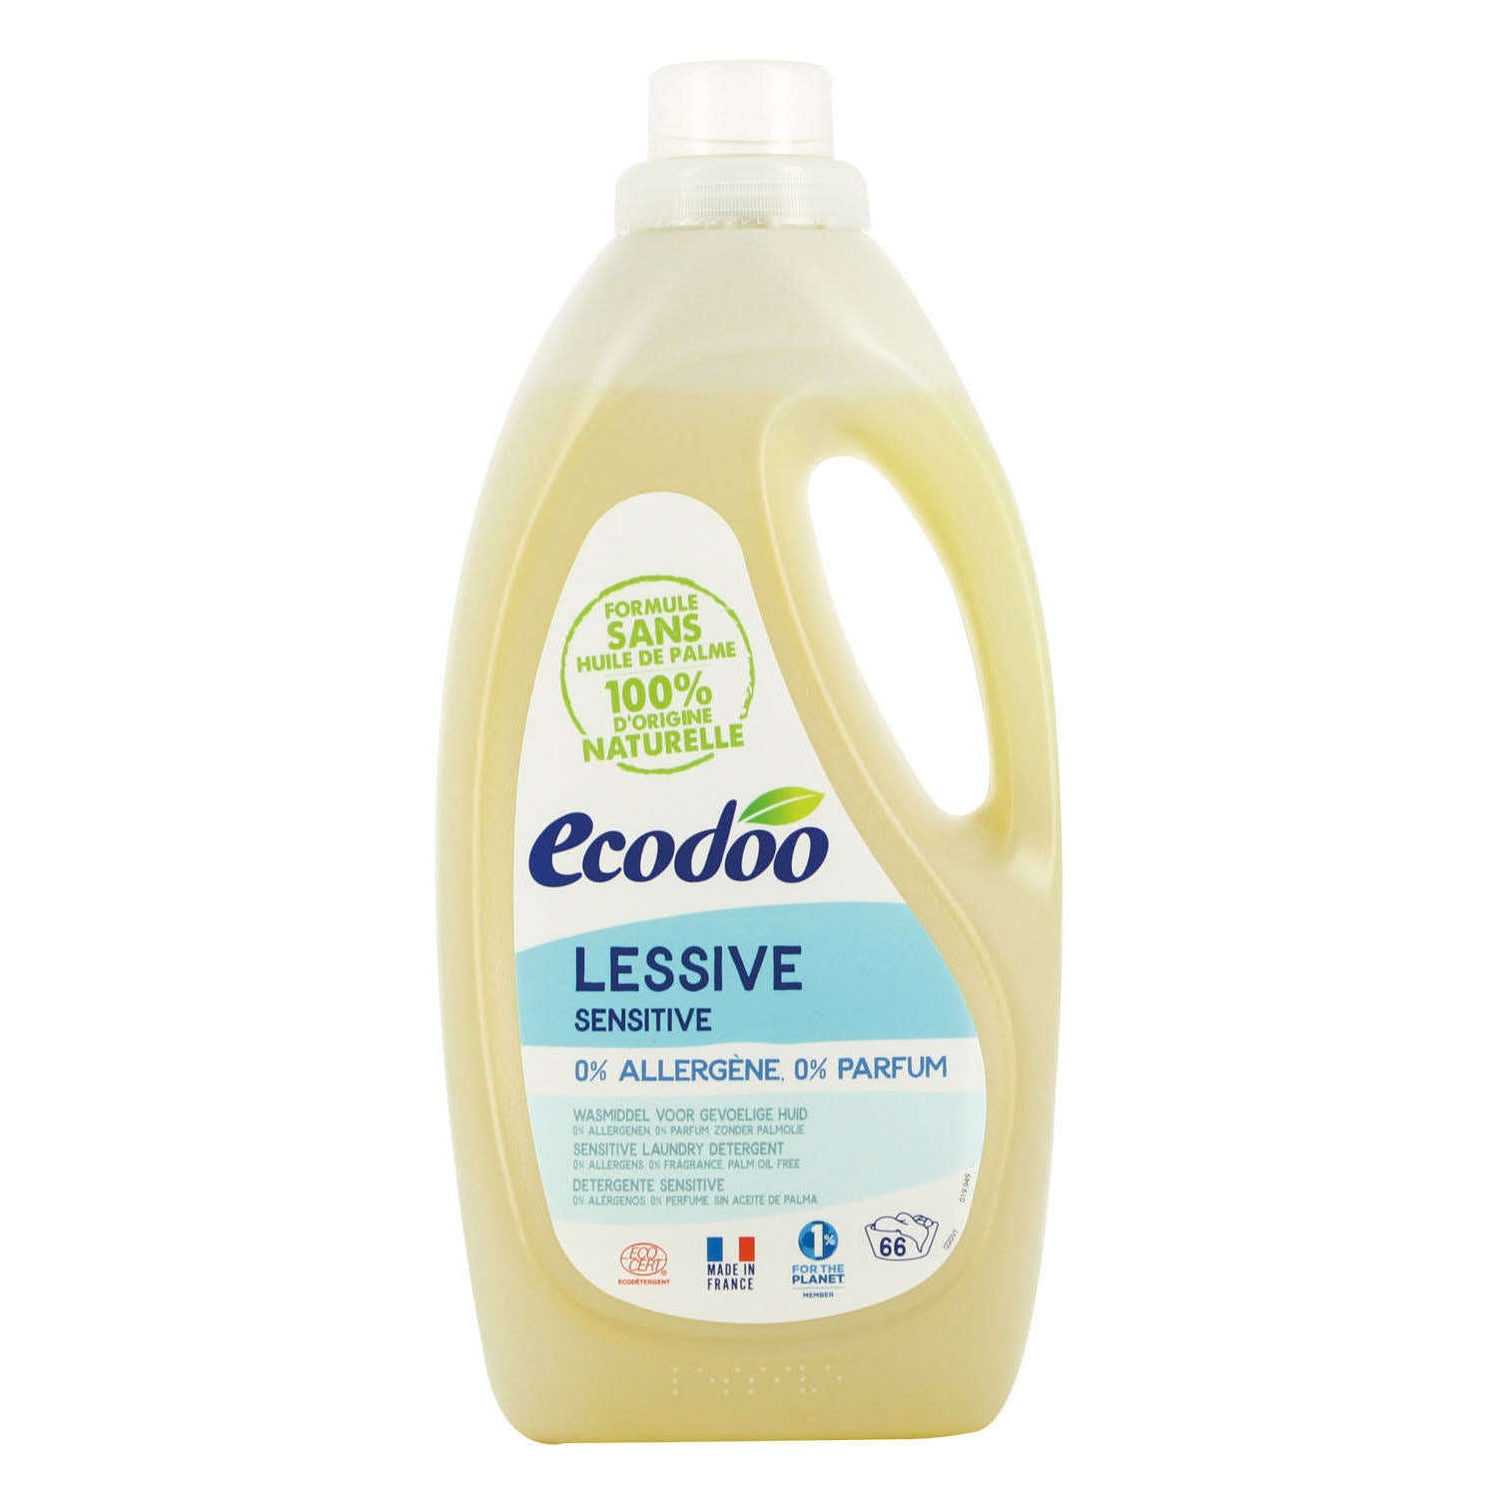 Ecodoo Pyykinpesuaine | Rakastettu Ecodoo nyt Hyvikseltä!  €